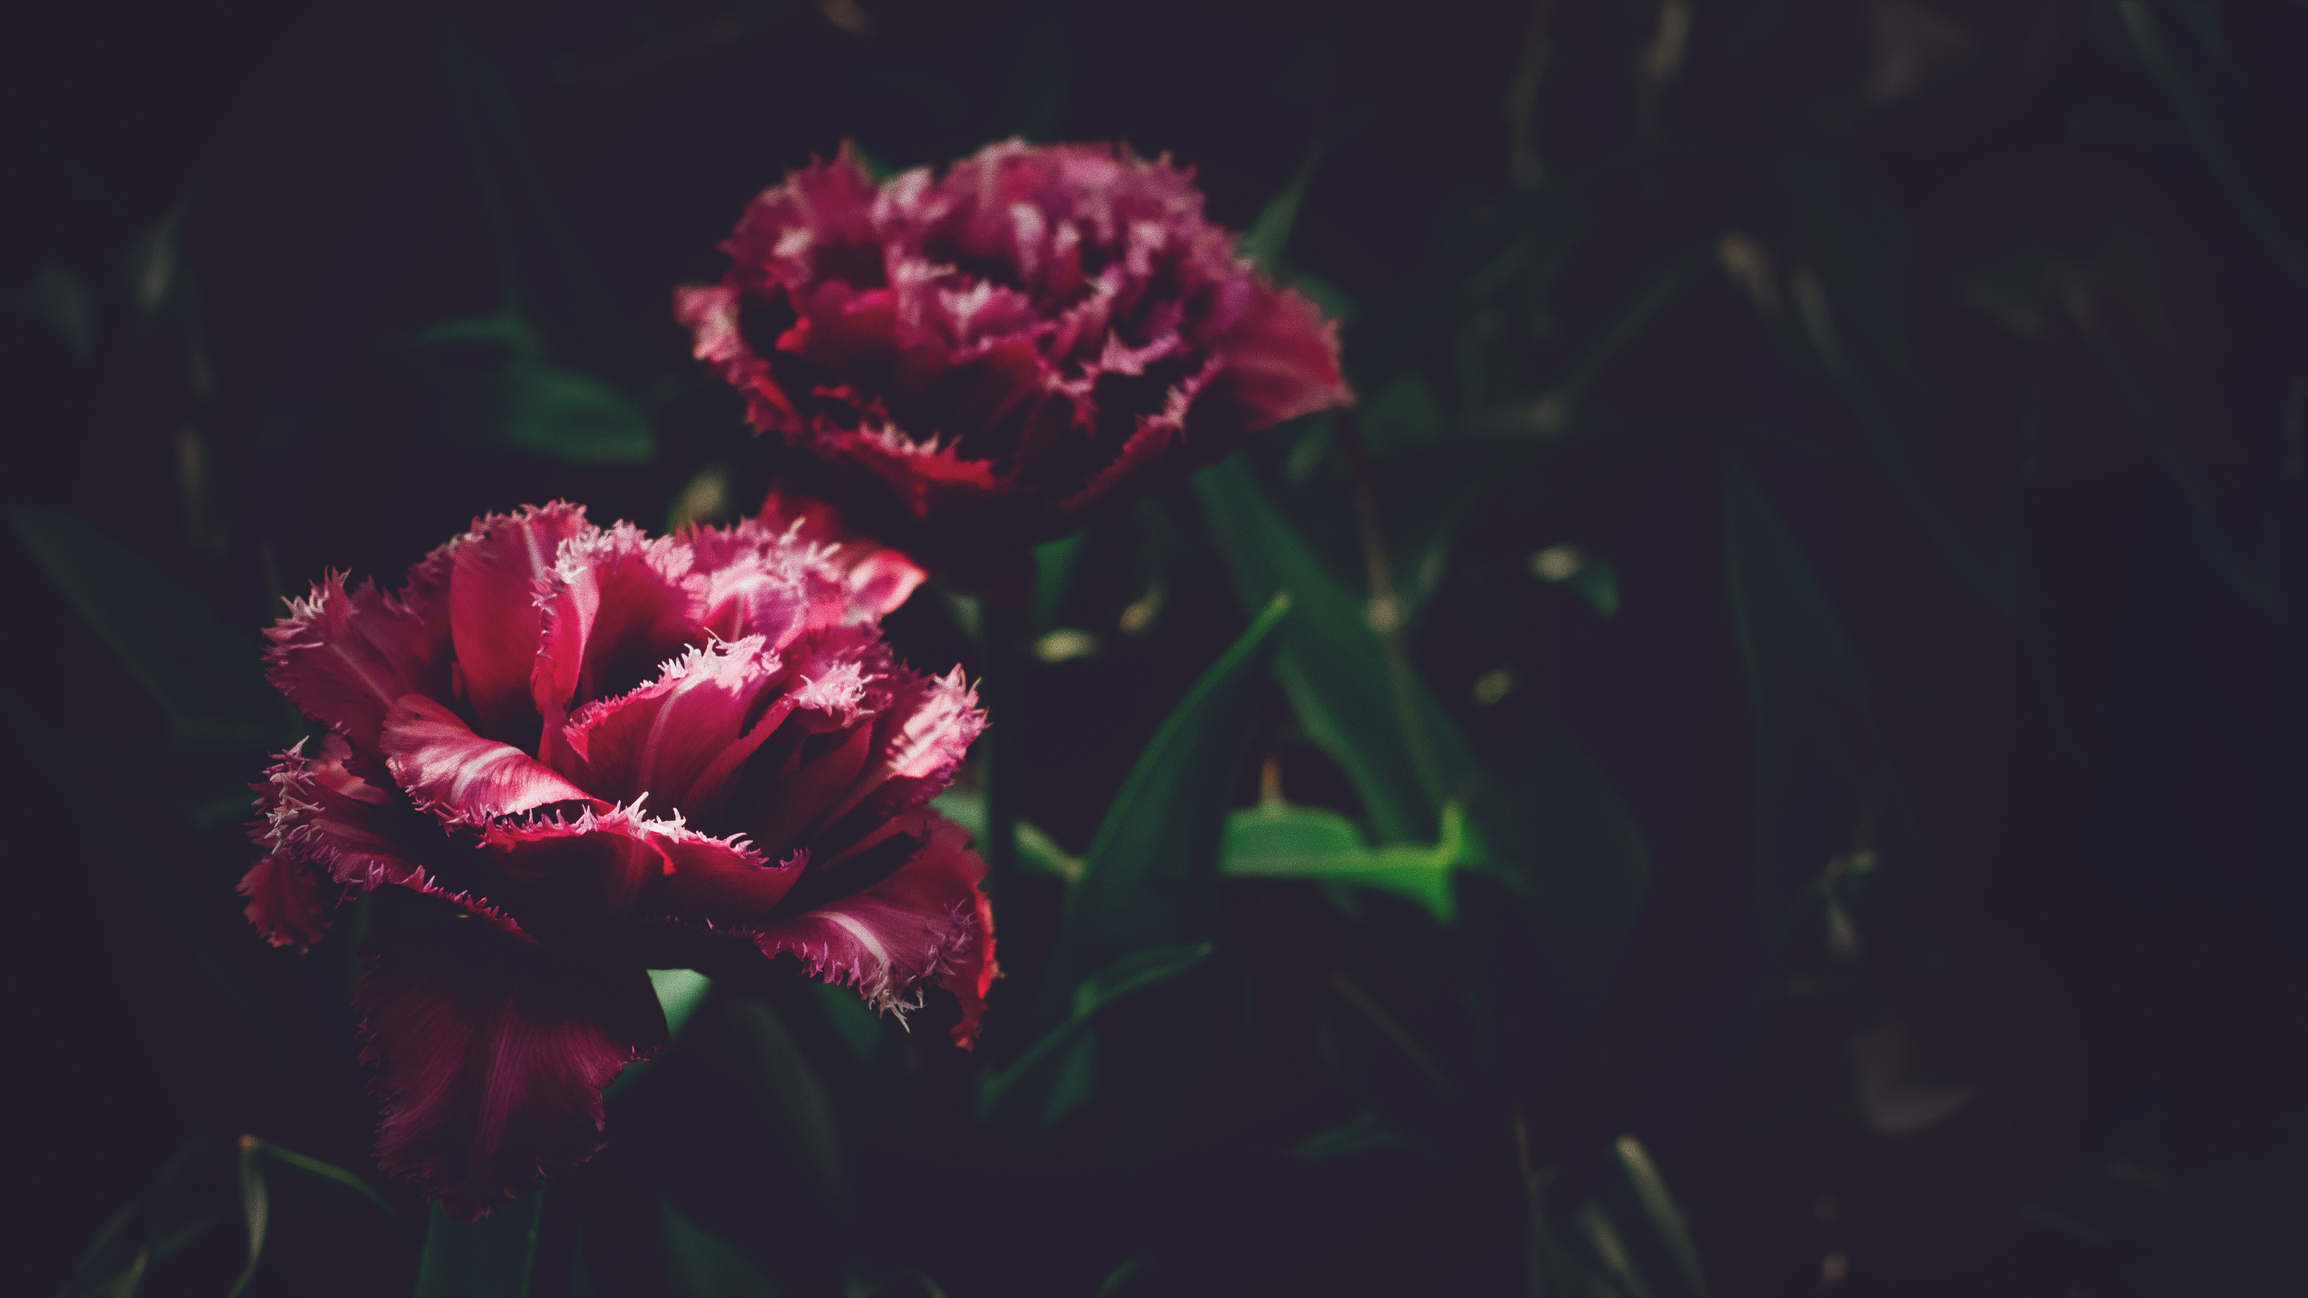 Ngắm nhìn hoa tím đỏ đậm trên nền đen đậm là một trải nghiệm tuyệt vời. Bạn sẽ bị mê hoặc bởi sự tương phản giữa màu sắc của hoa và nền đen. Hãy xem hình ảnh để được trải nghiệm cảm giác đó!